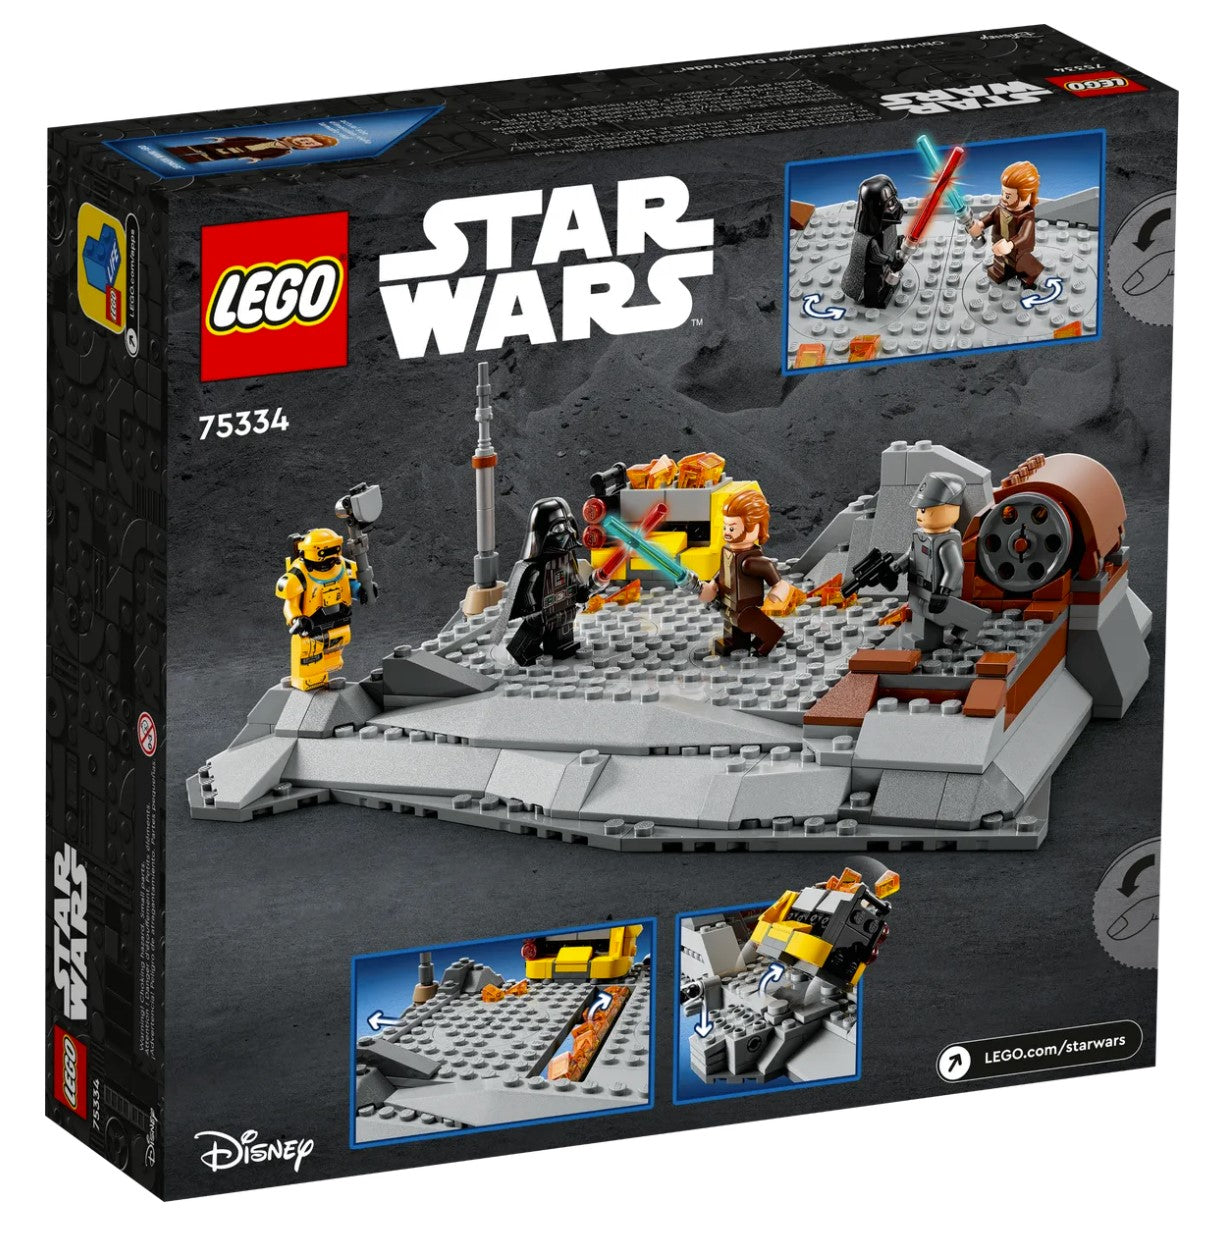 LEGO Star Wars Obi-Wan Kenobi Vs Darth Vader Set 75334 (Pre-Order)